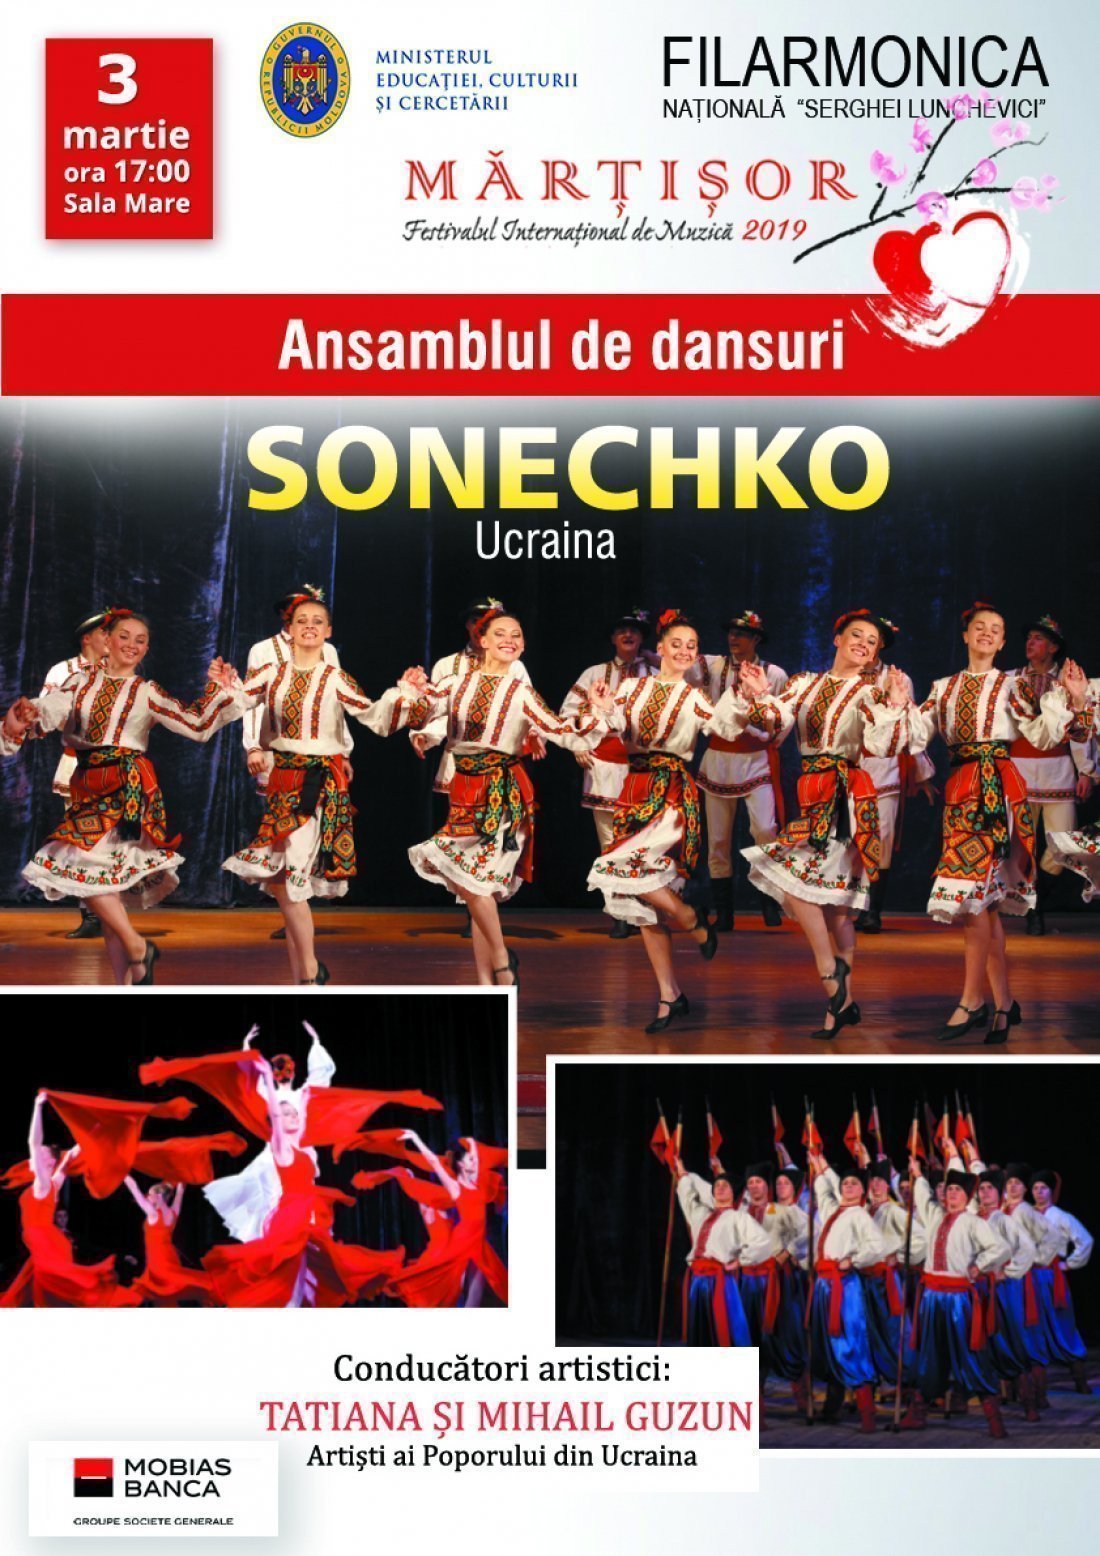 Ansamblul de dansuri Sonechko, Ucraina